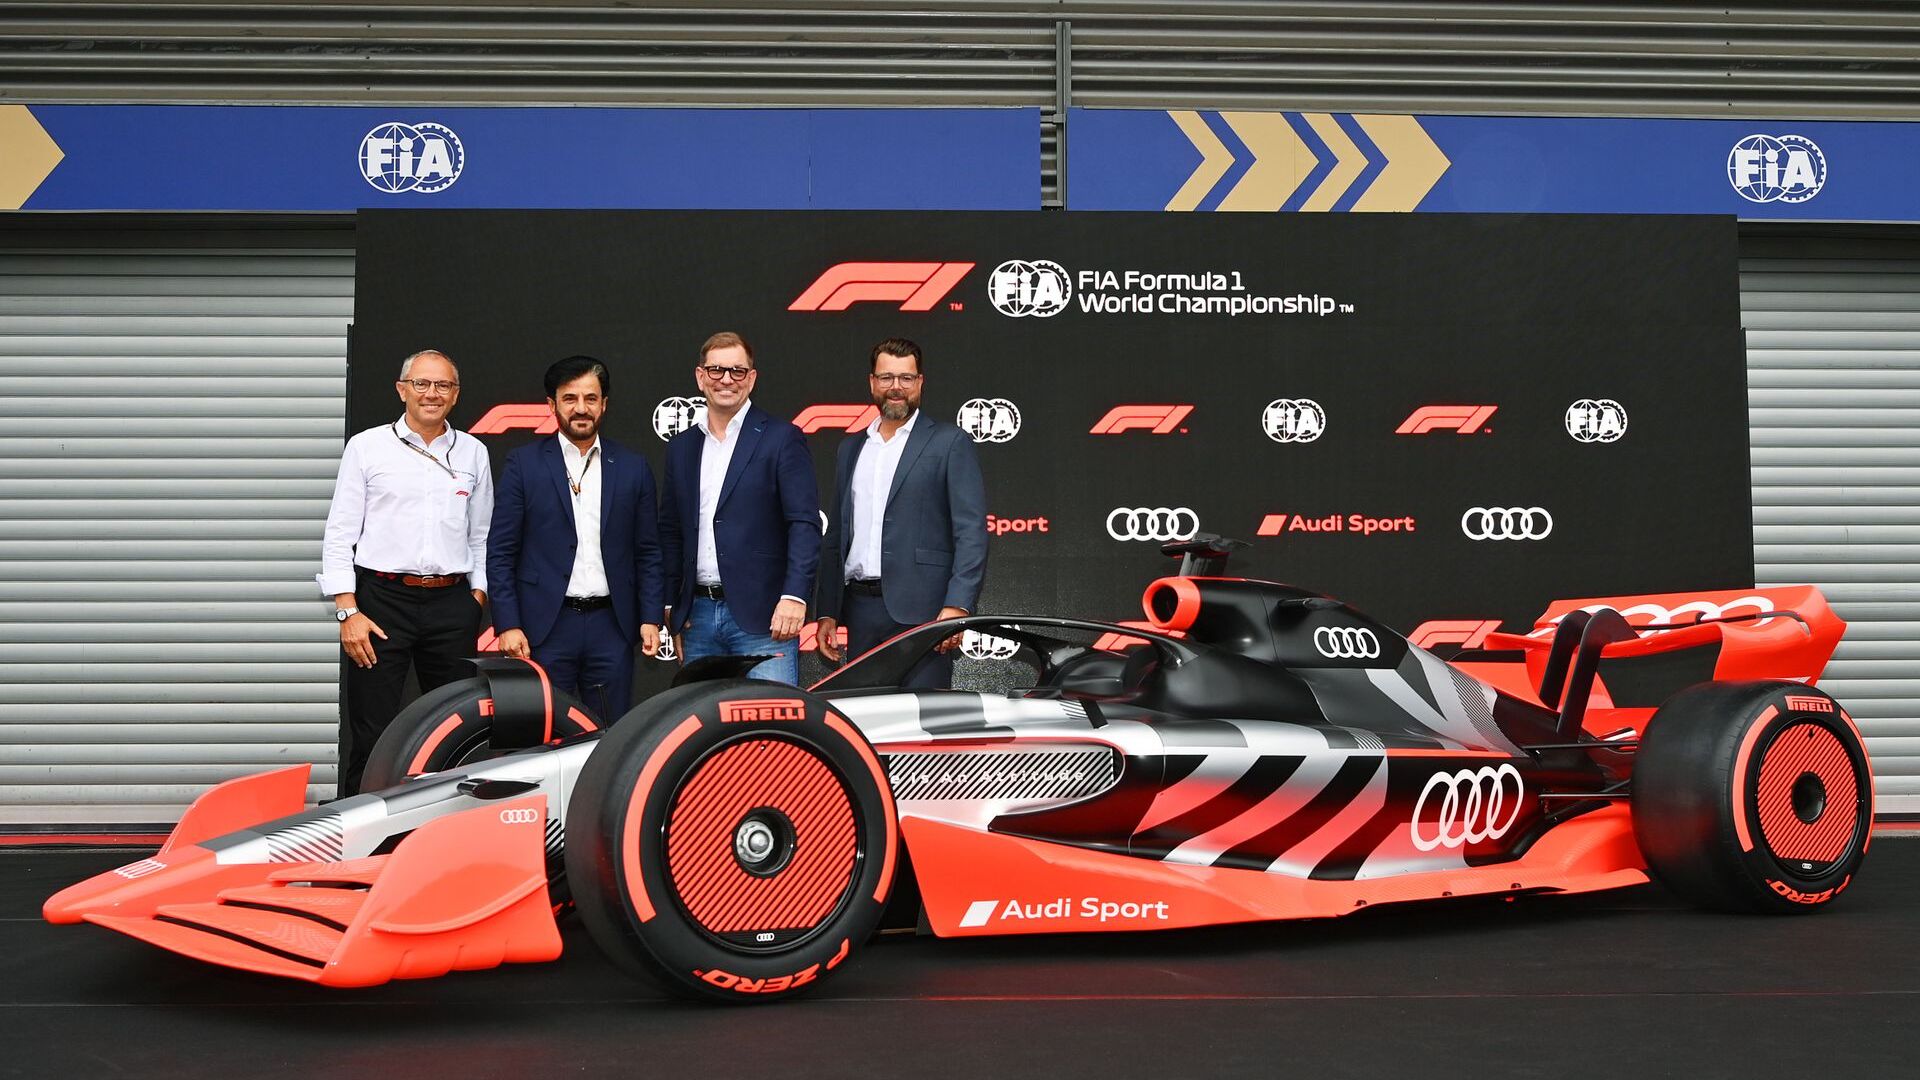 La conferenza stampa di lancio del programma Audi in Formula 1